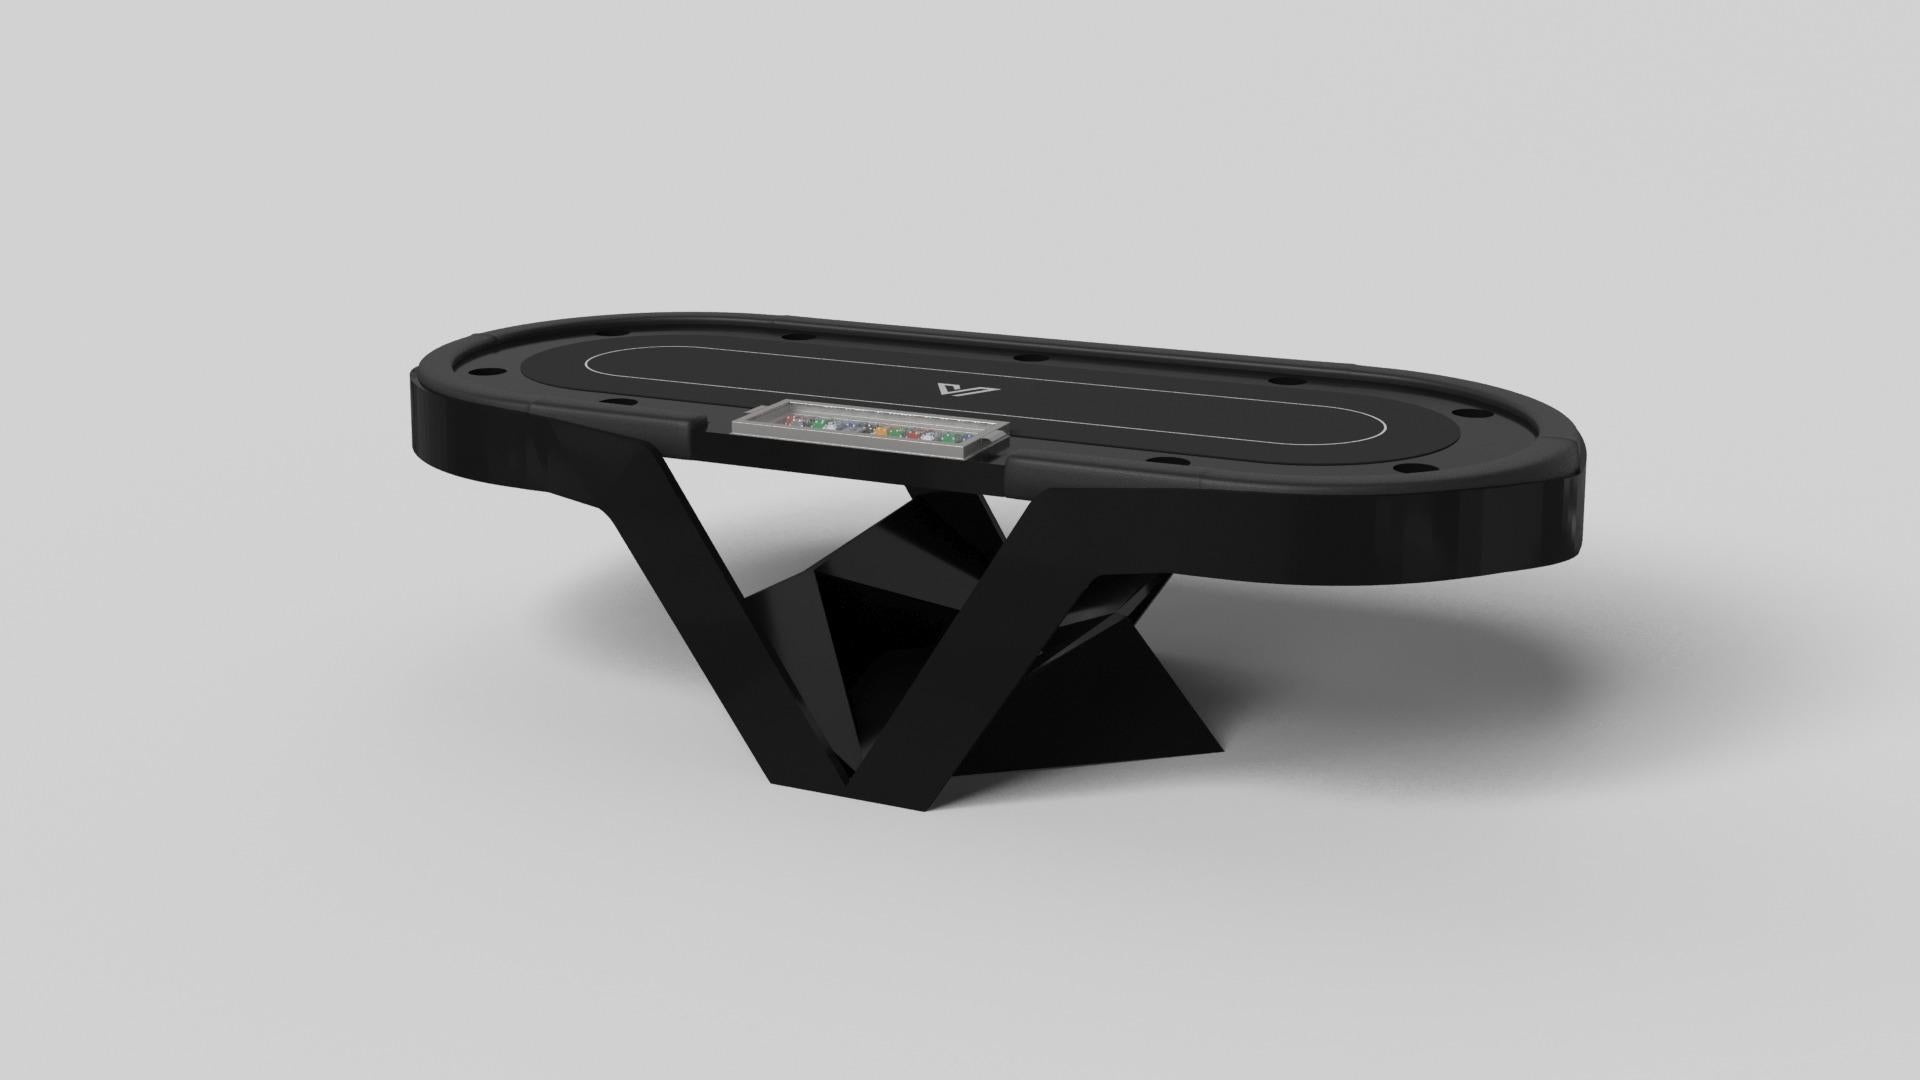 Der Enzo-Pokertisch ist von den aerodynamischen Winkeln der europäischen Spitzenfahrzeuge inspiriert. Das Design mit seinen schlanken, V-förmigen Linien und der durchdachten Nutzung des negativen Raums verleiht diesem Tisch einen energiegeladenen